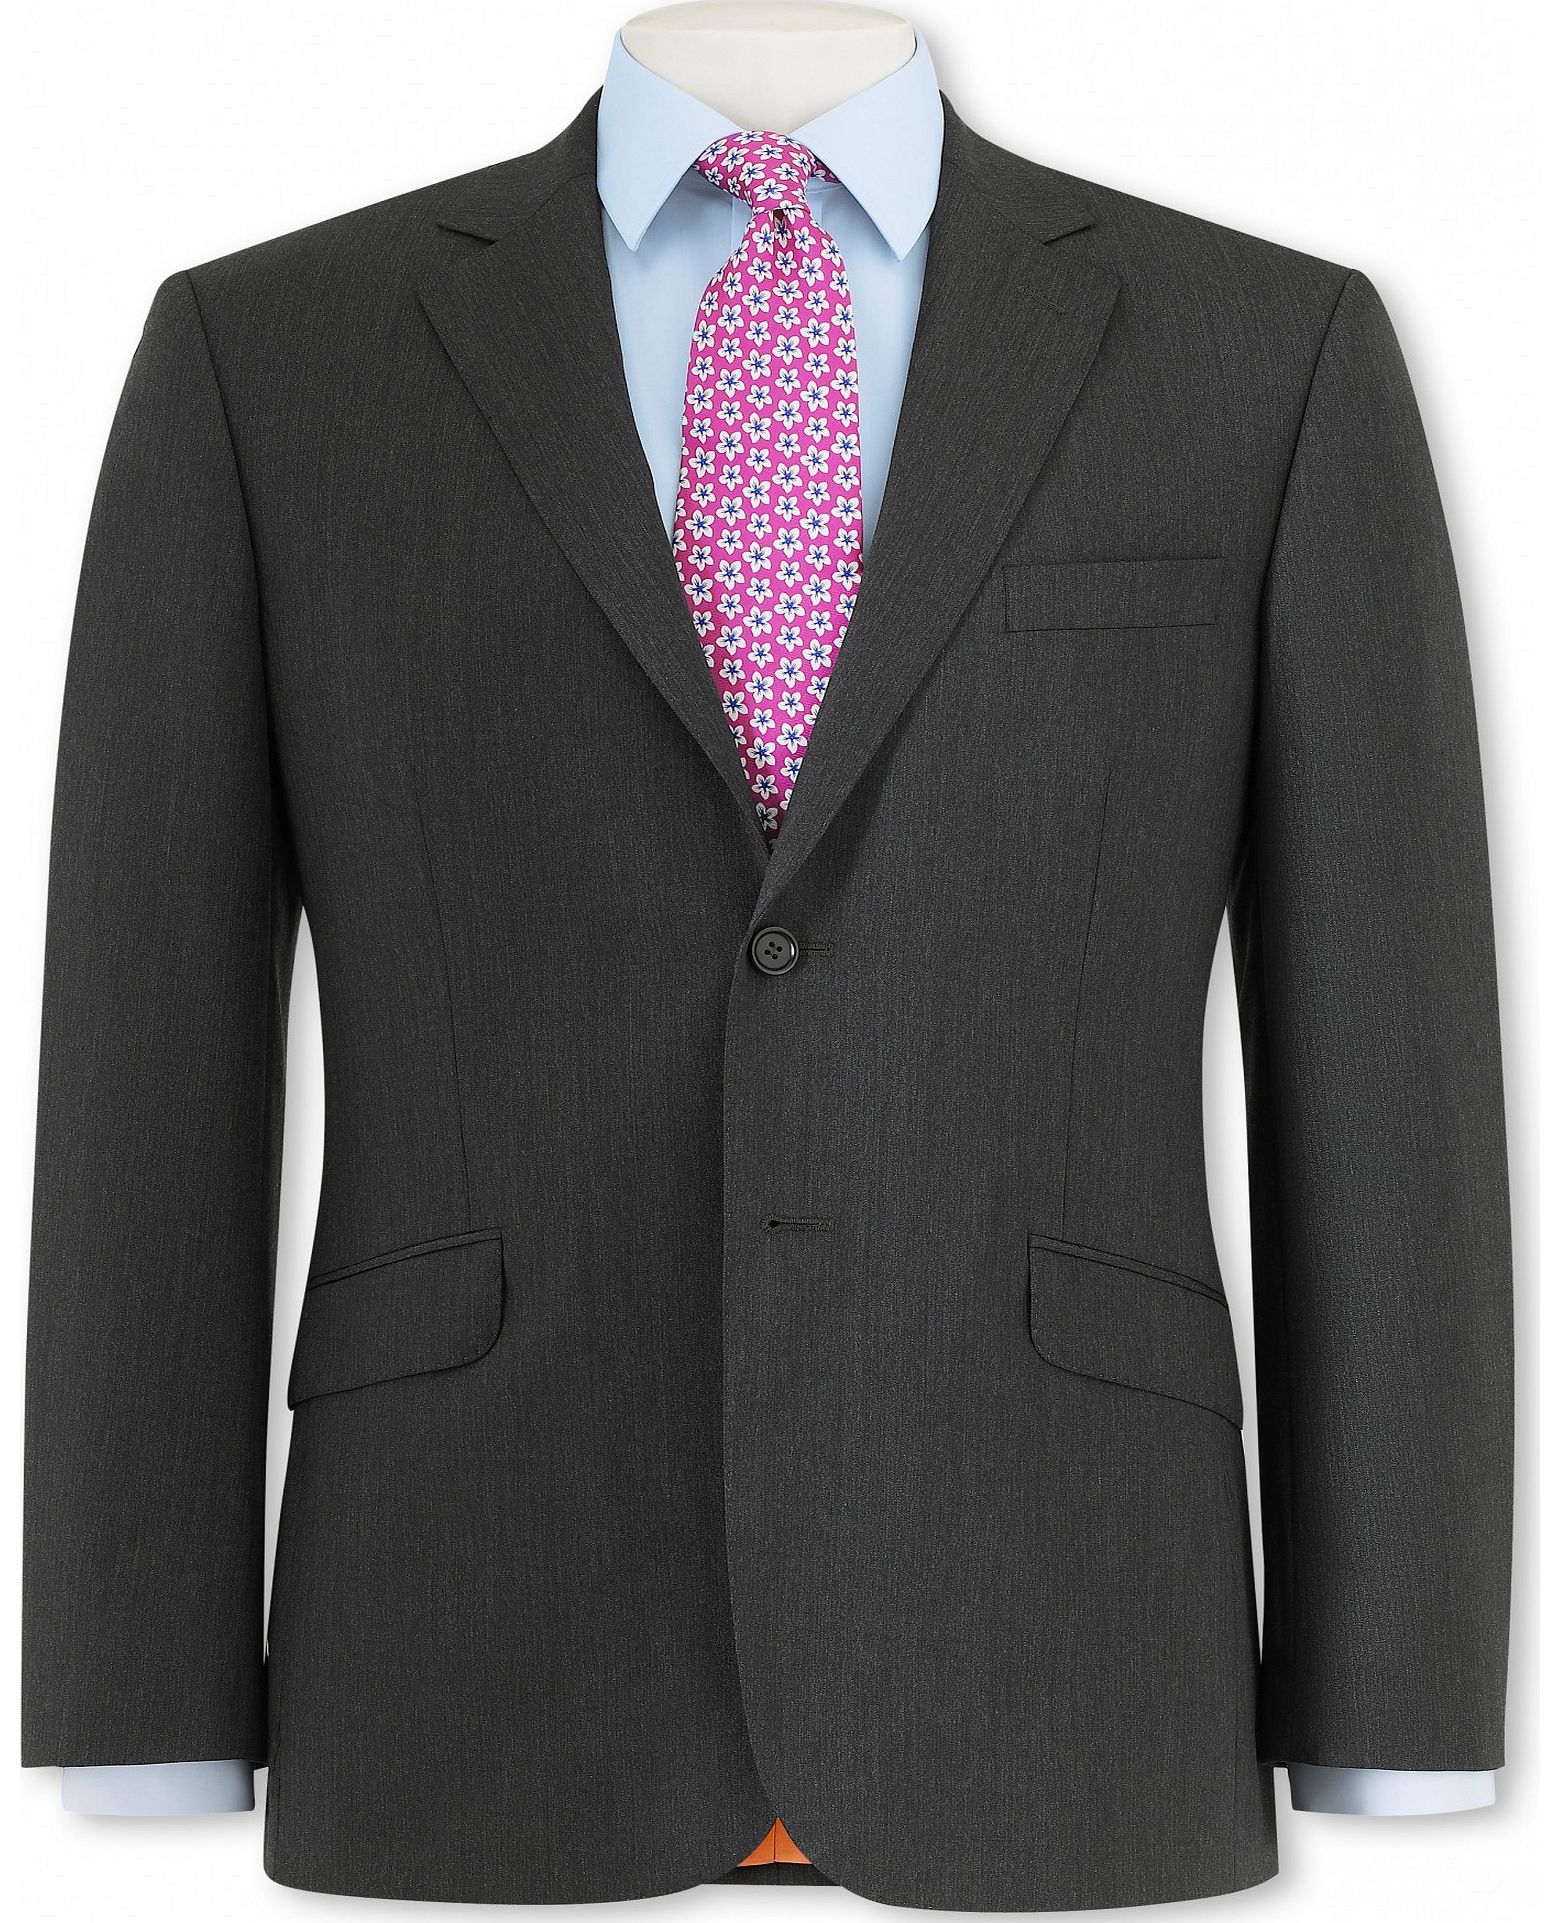 Grey Herringbone Suit Jacket 50`` Long